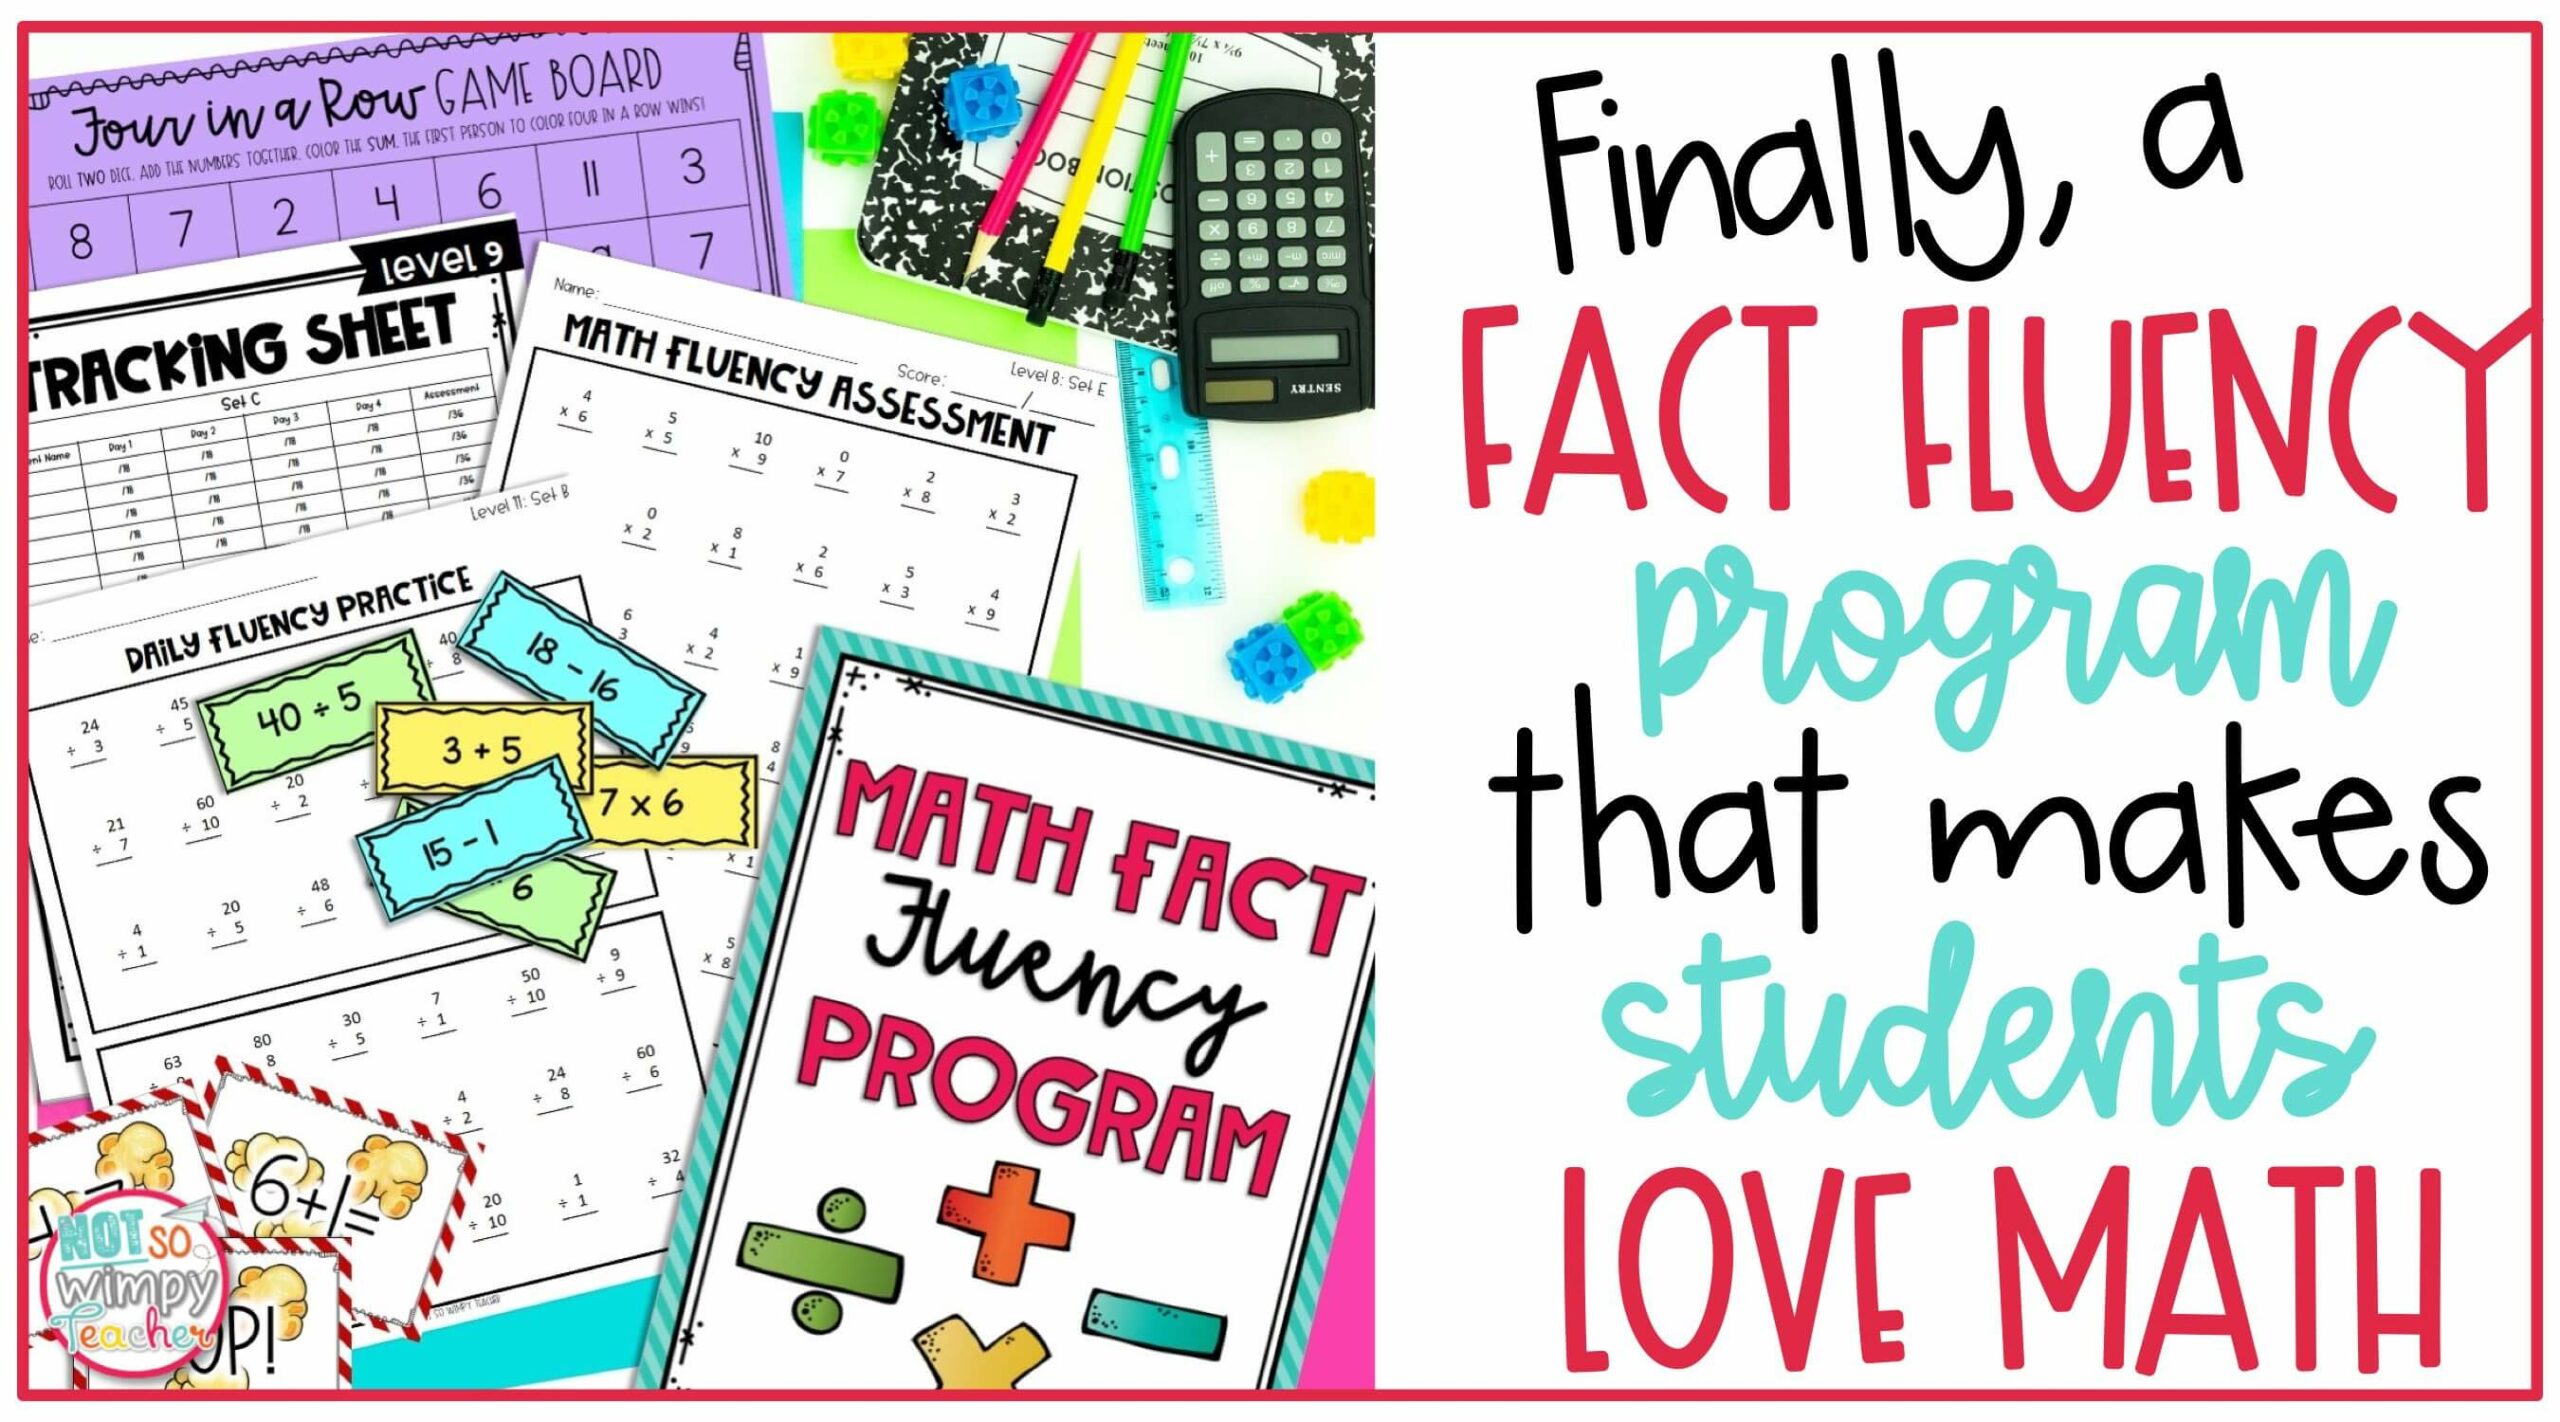 finally-a-fact-fluency-program-that-will-make-your-kids-love-math-not-so-wimpy-teacher